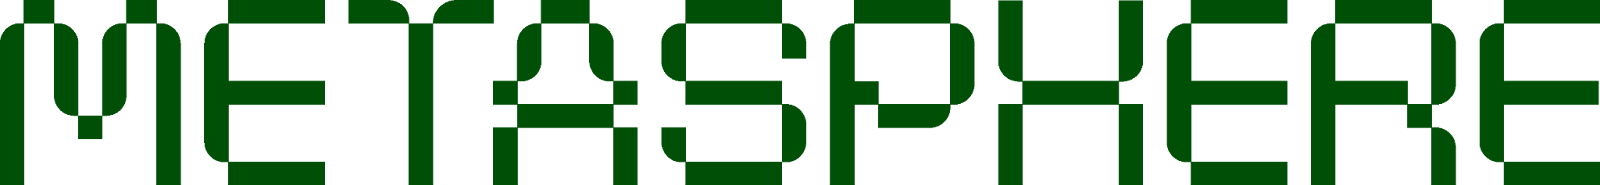 MetaSphere Logo Black